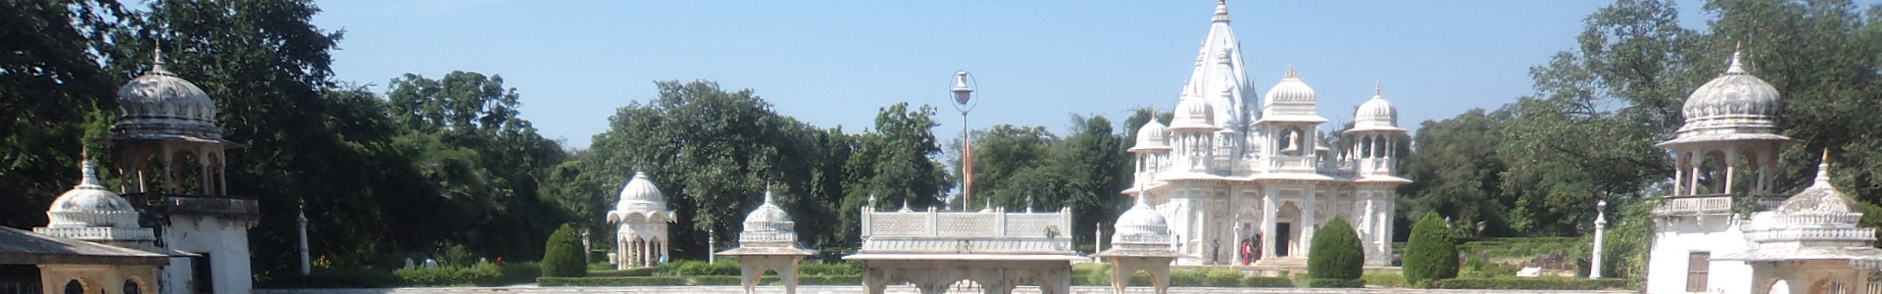 Shivpuri, Madhya Pradesh